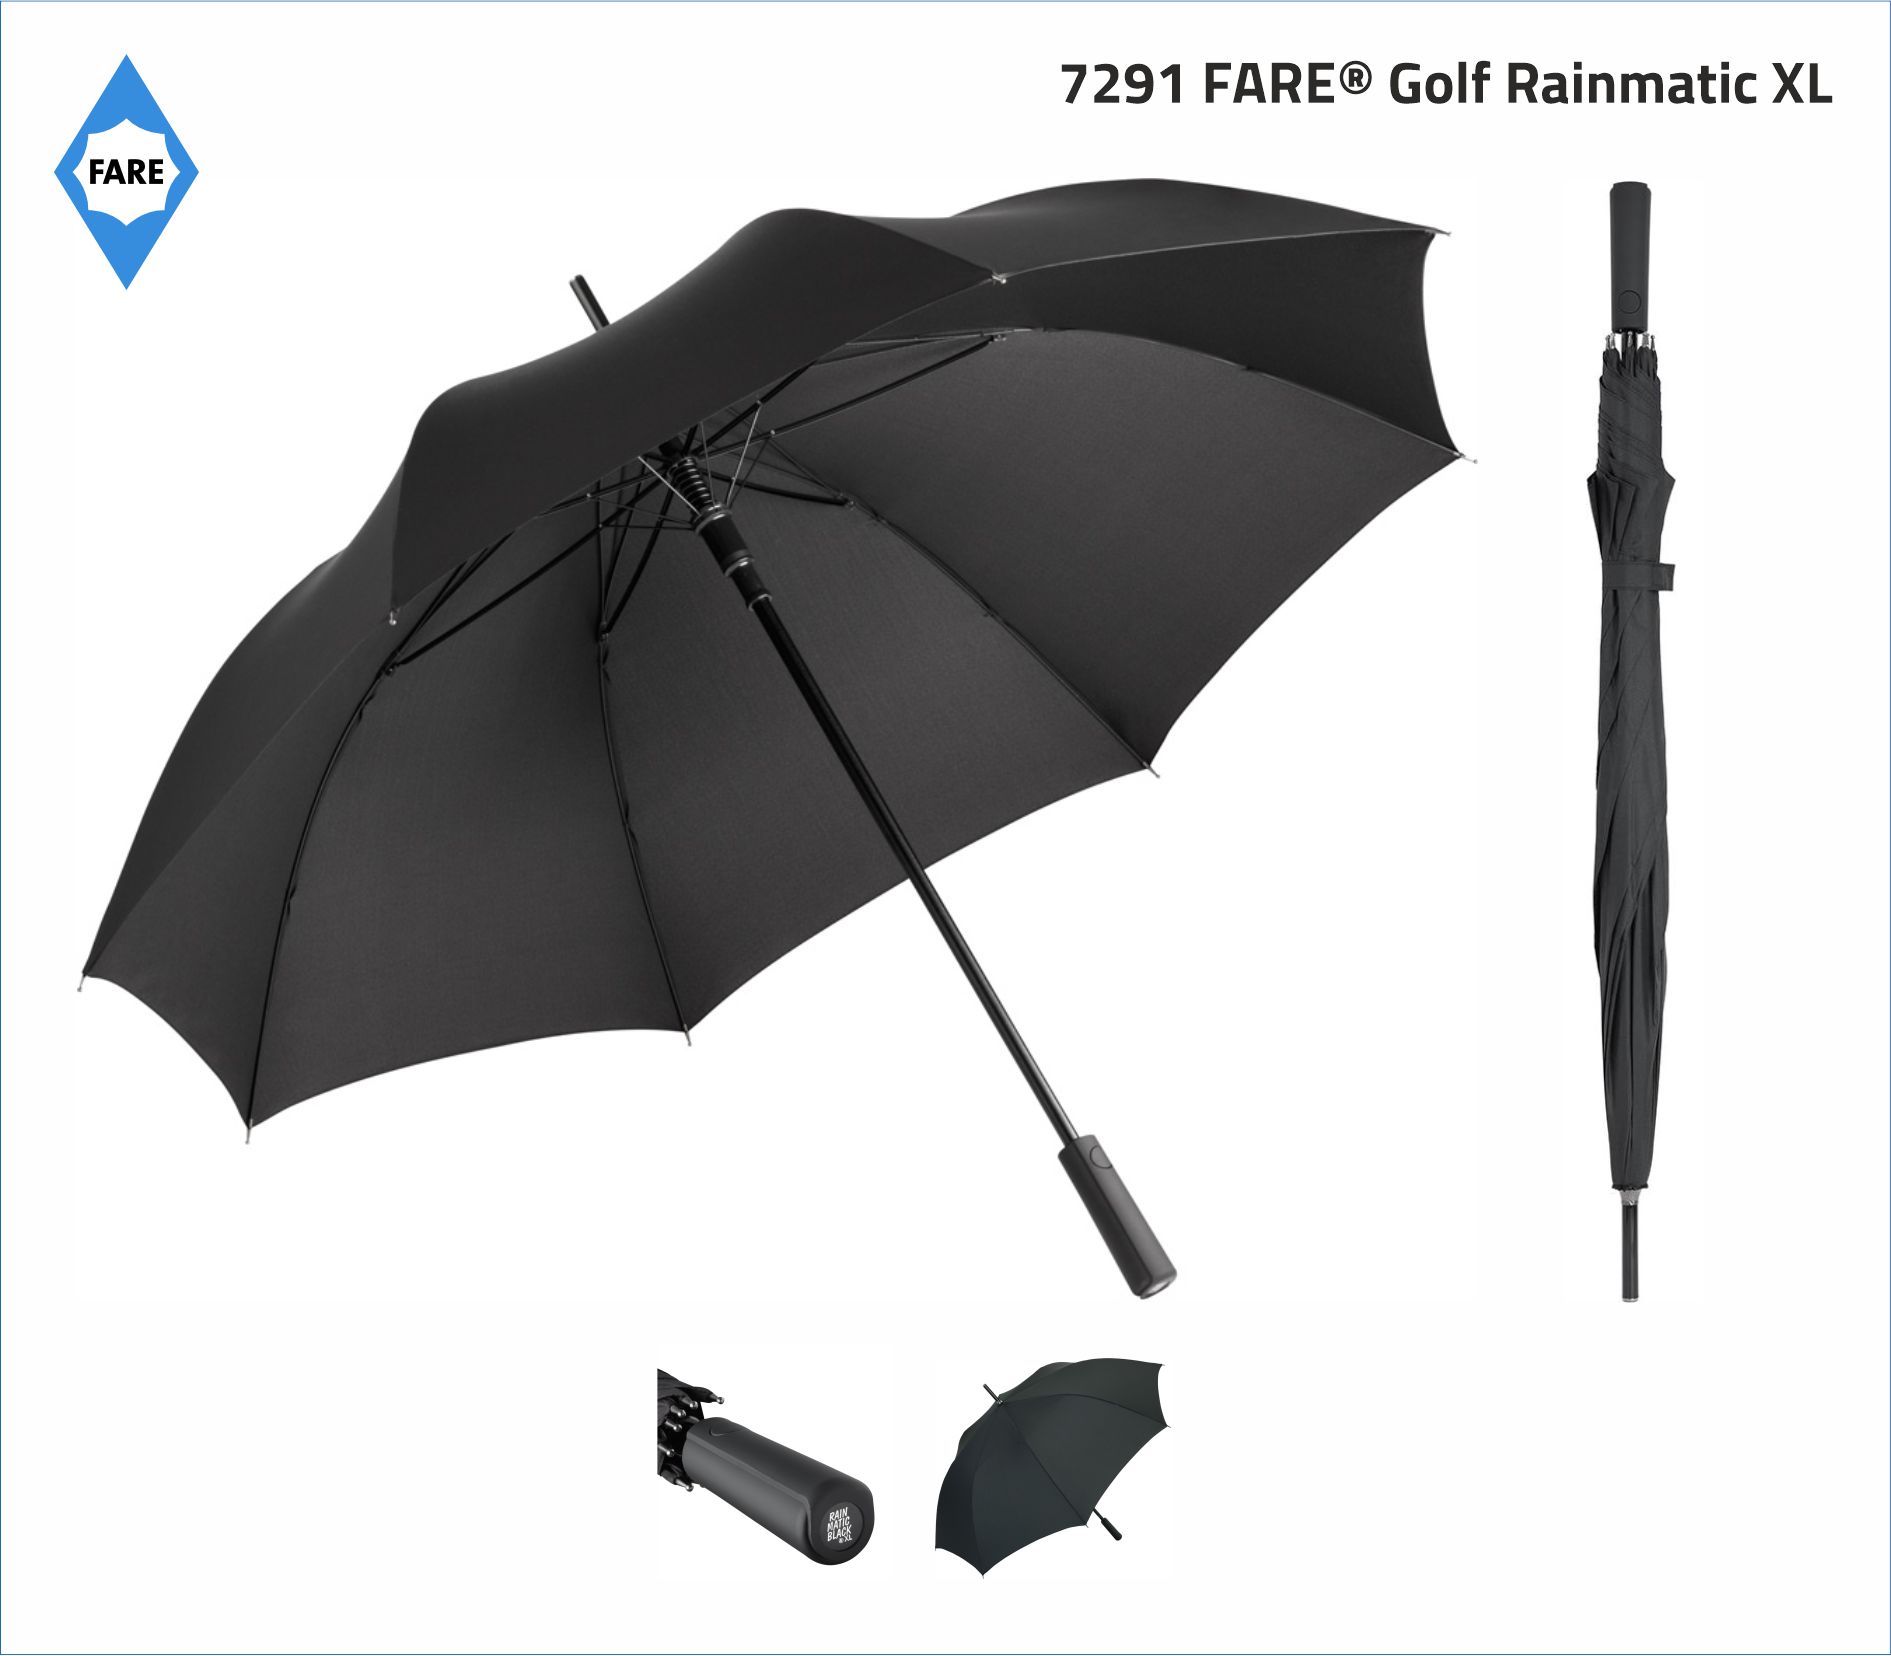 7291 PARASOL FARE AC golf Rainmatic XL